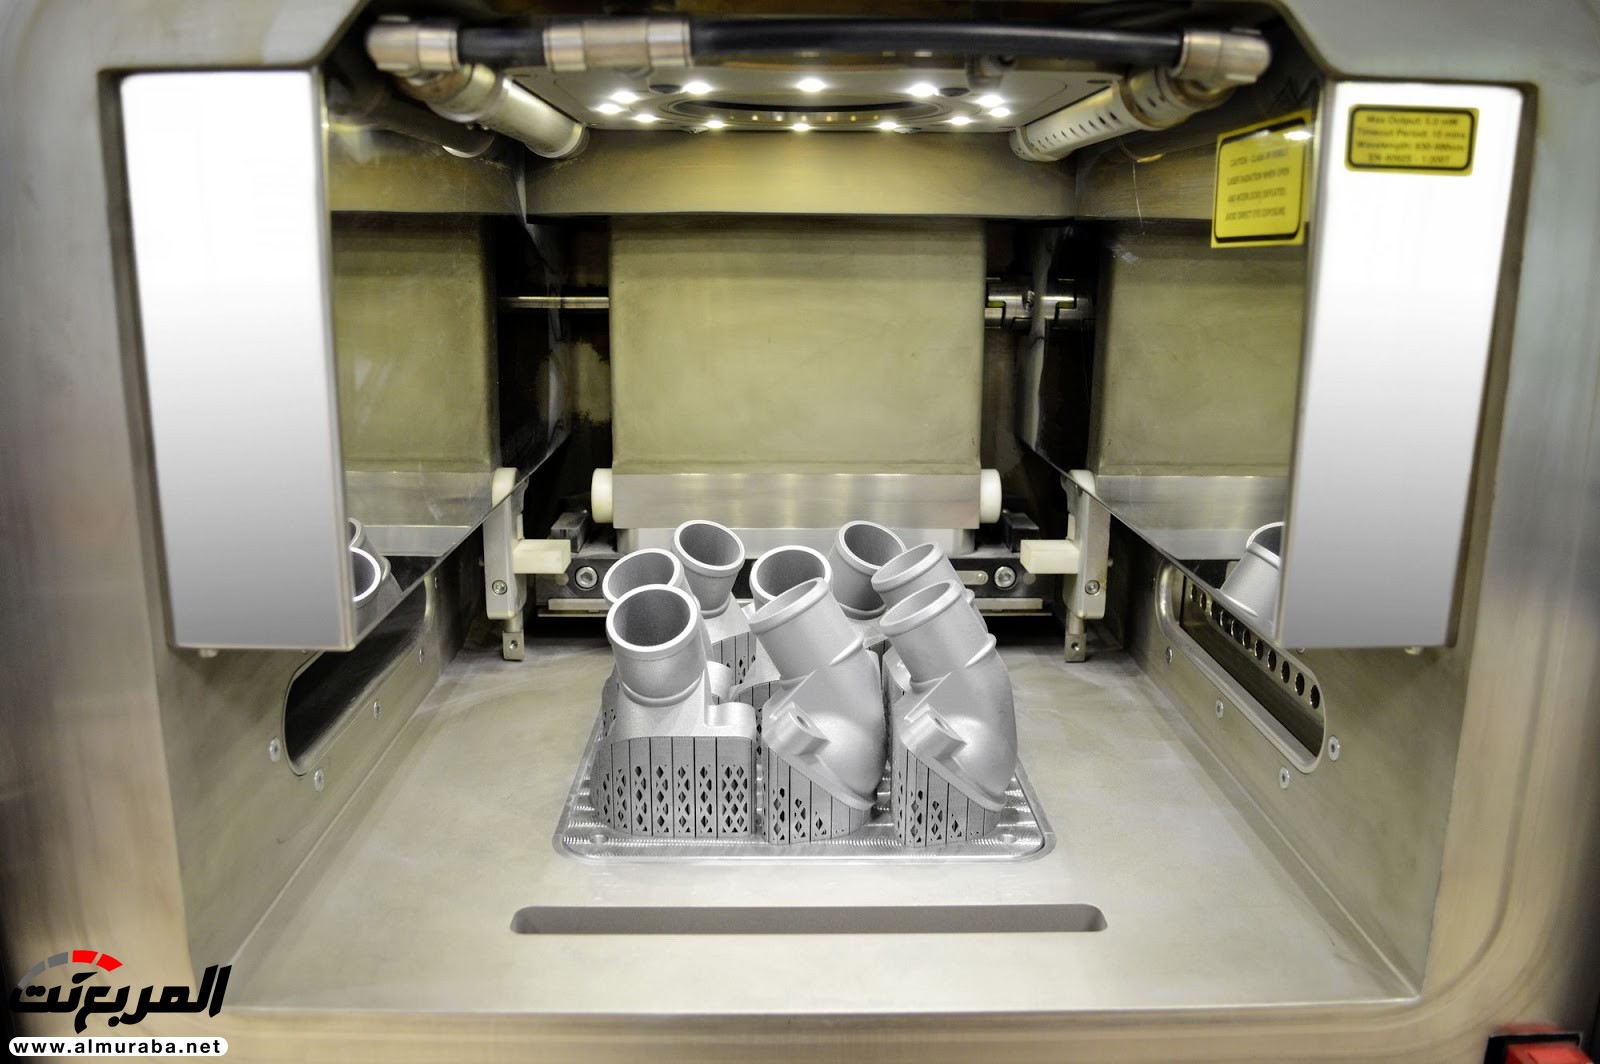 مرسيدس استطاعت تصنيع قطع غيار بطابعة 3D 3